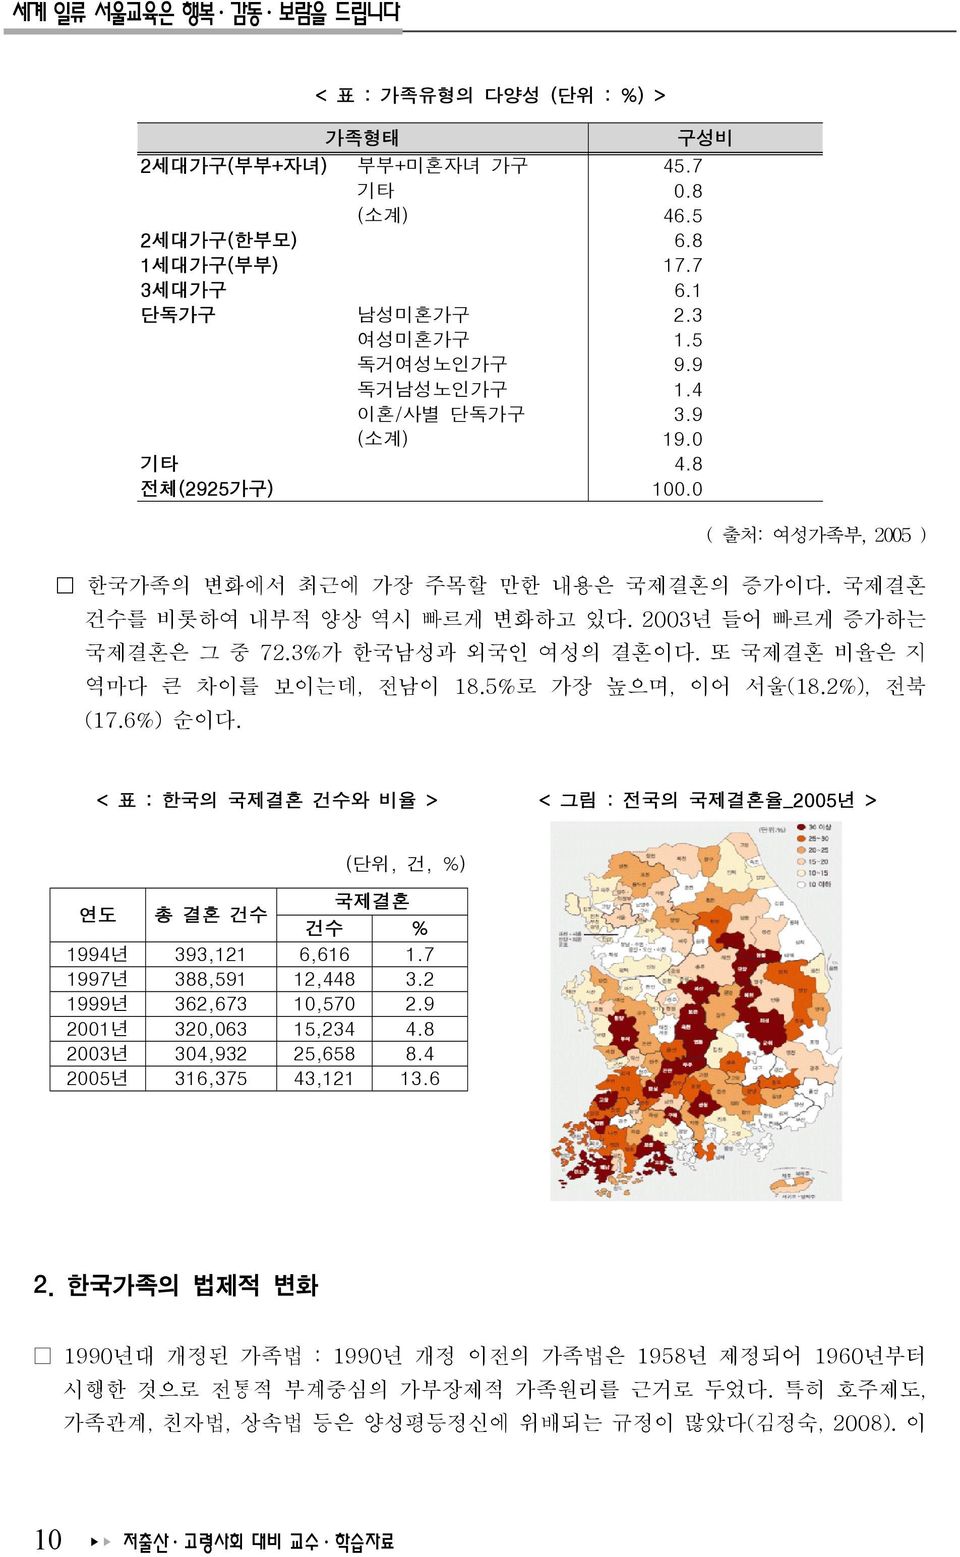 3%가 한국남성과 외국인 여성의 결혼이다. 또 국제결혼 비율은 지 역마다 큰 차이를 보이는데, 전남이 18.5%로 가장 높으며, 이어 서울(18.2%), 전북 (17.6%) 순이다.